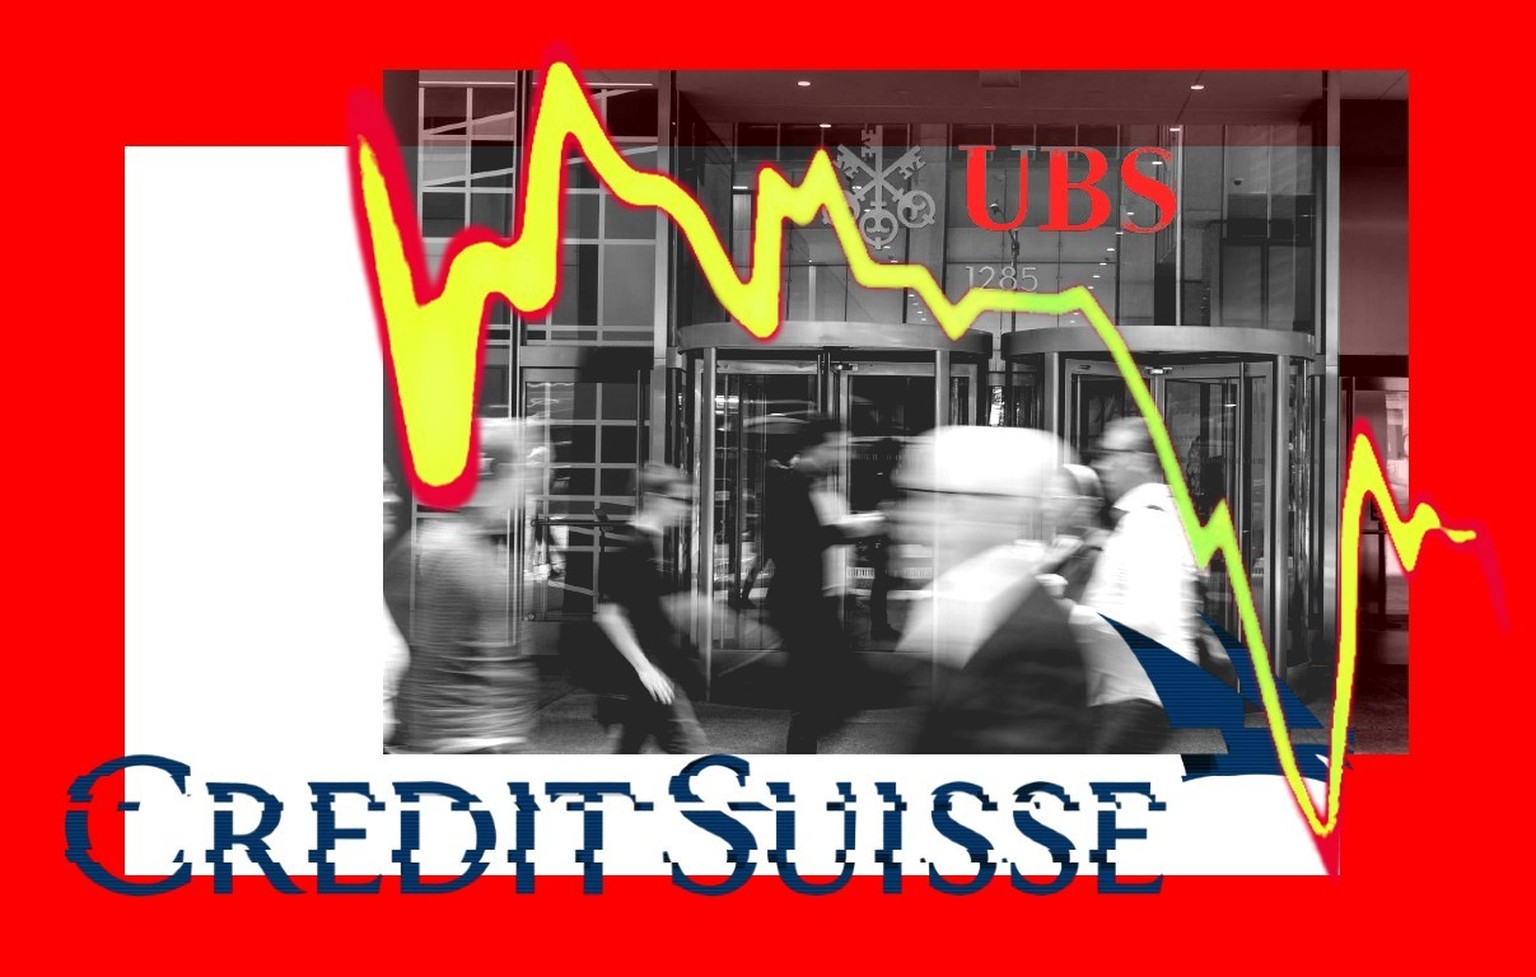 Après la faillite de la banque Credit Suisse, les petits actionnaires sont restés sur le carreau. Une start-up juridique vaudoise a décidé de mener la fronde pour obtenir dédommagement de la part d'UB ...